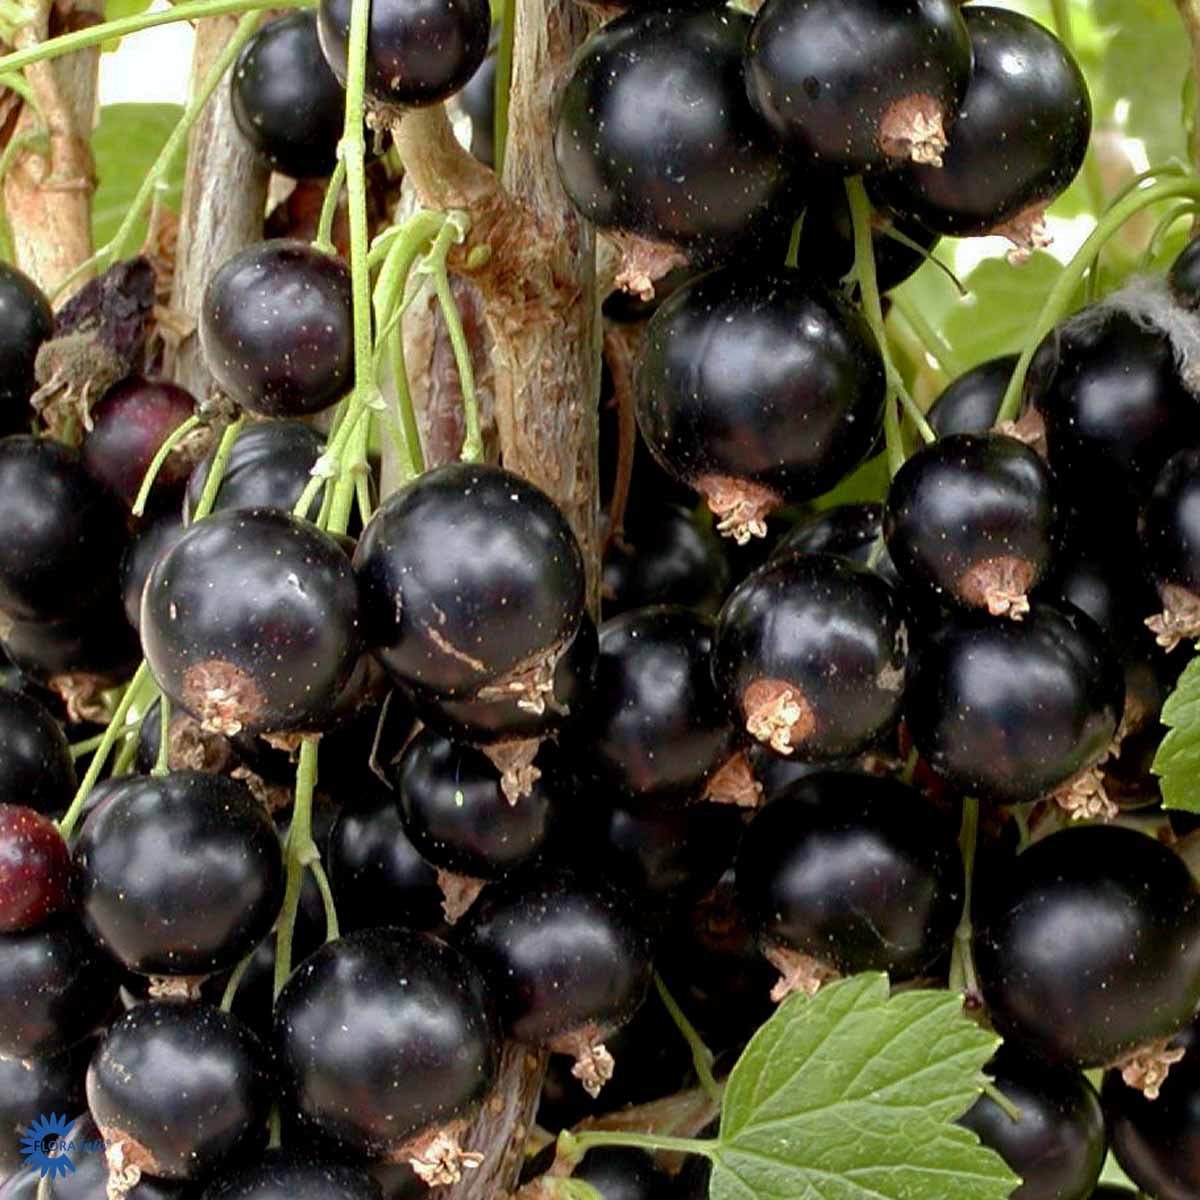 Titania Solbærbusk også kendt under navnet ribes nigrum titania og har massere af sorte lækre spiselige solbær